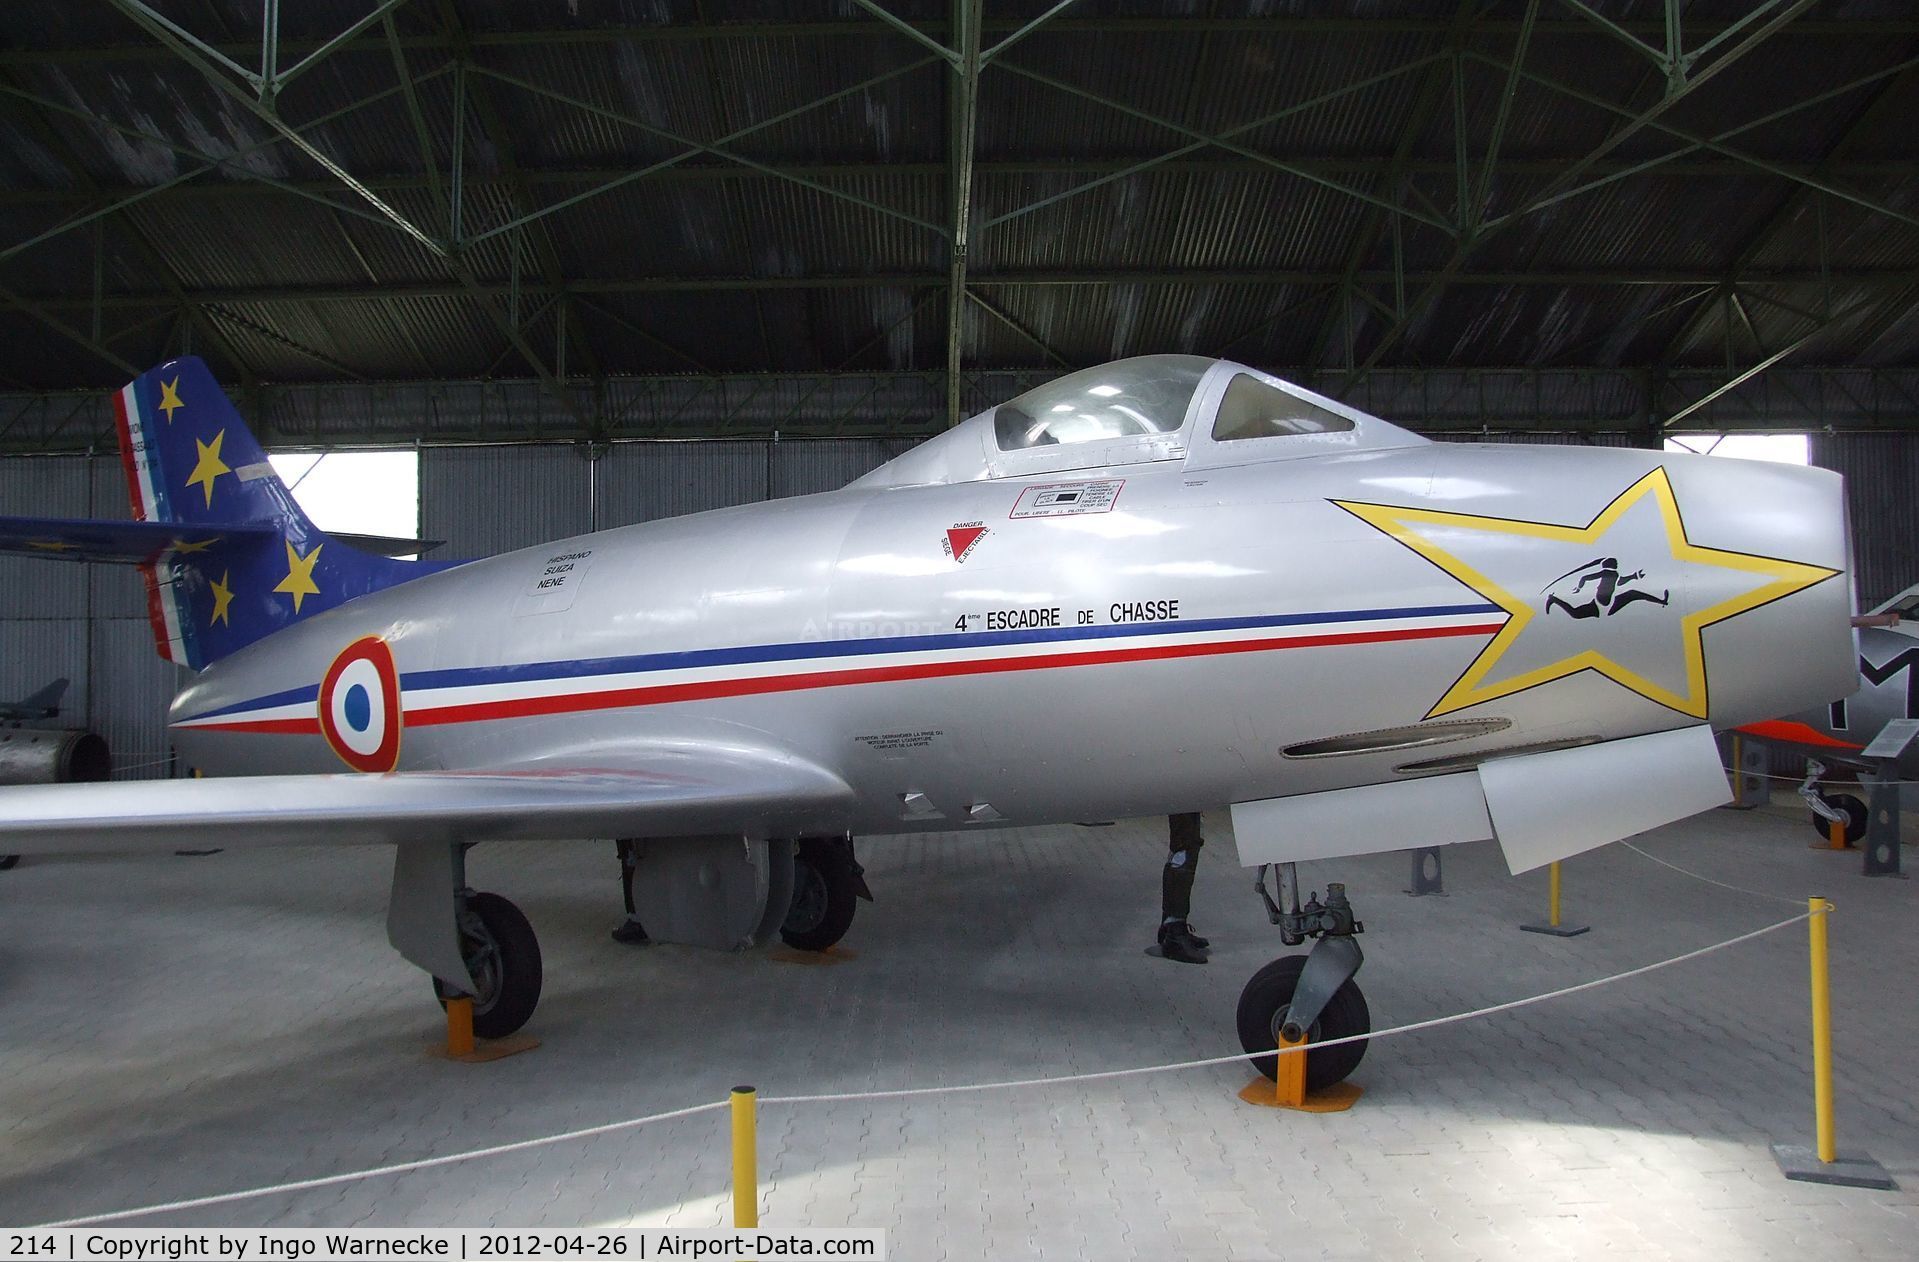 214, Dassault MD-450 Ouragan C/N 214, Dassault MD.450 Ouragan at the Musée Européen de l'Aviation de Chasse, Montelimar Ancone airfield